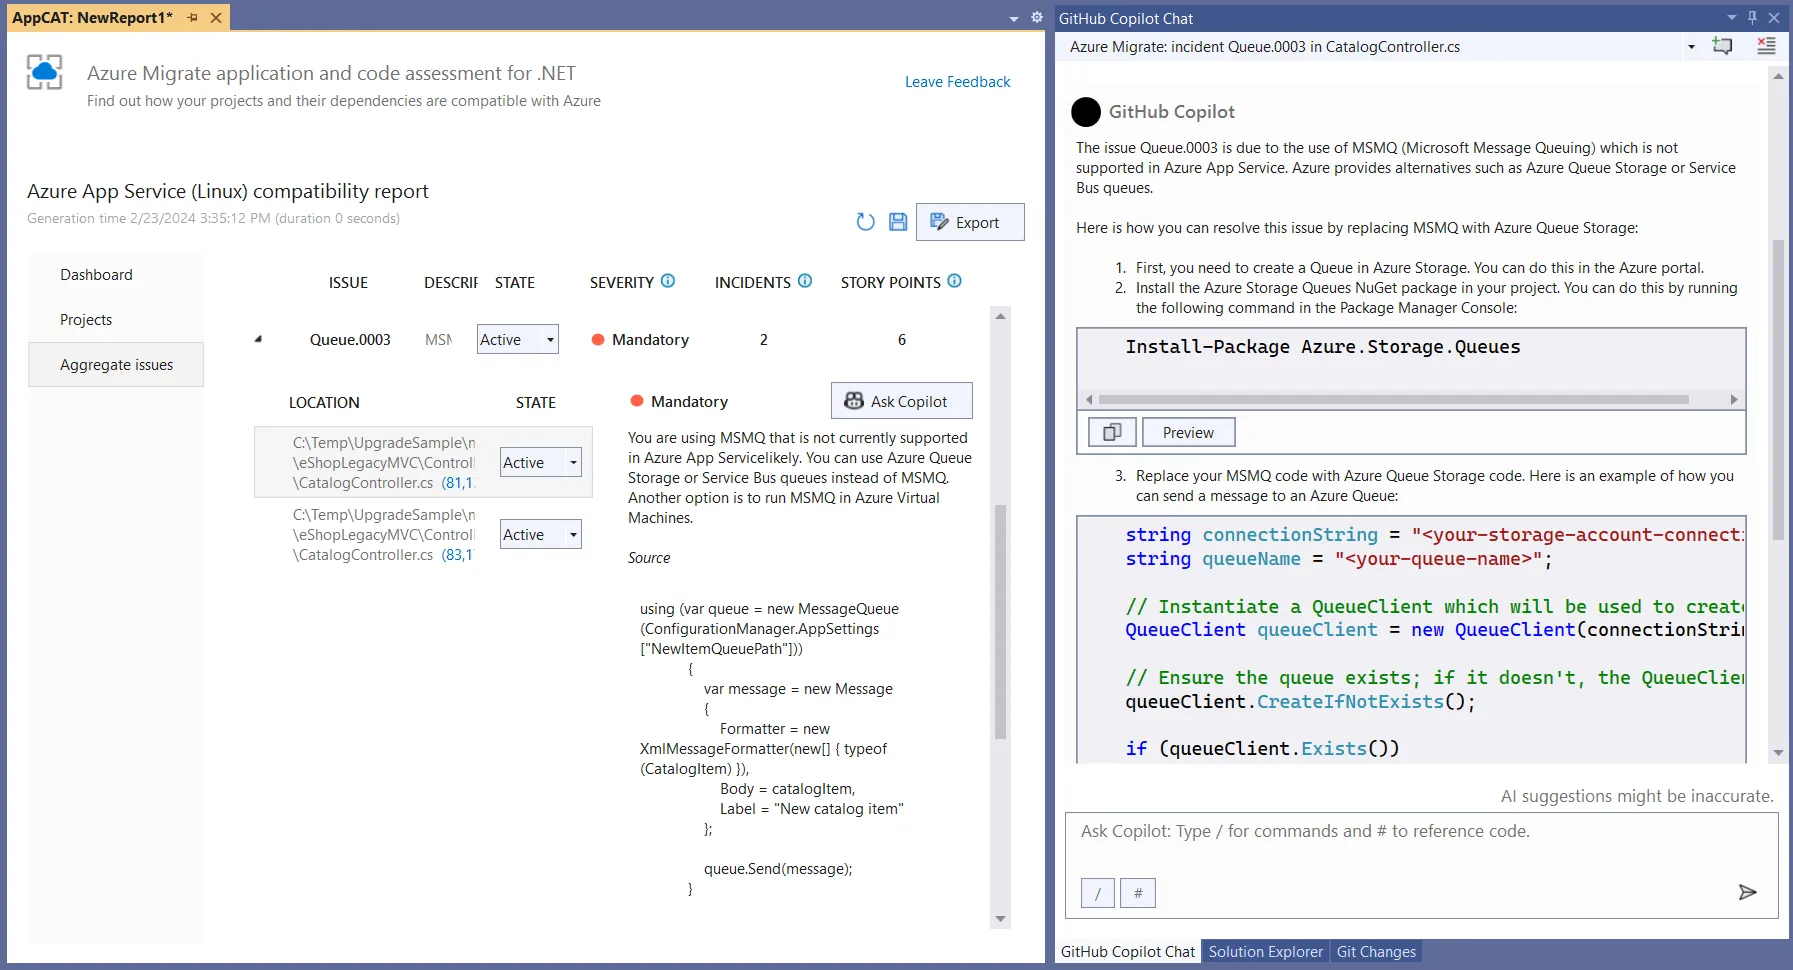 Zrzut ekranu przedstawiający aplikację Azure Migrate i interfejs użytkownika oceny kodu umożliwiający zadawanie pytań do usługi GitHub Copilot Chat o problem